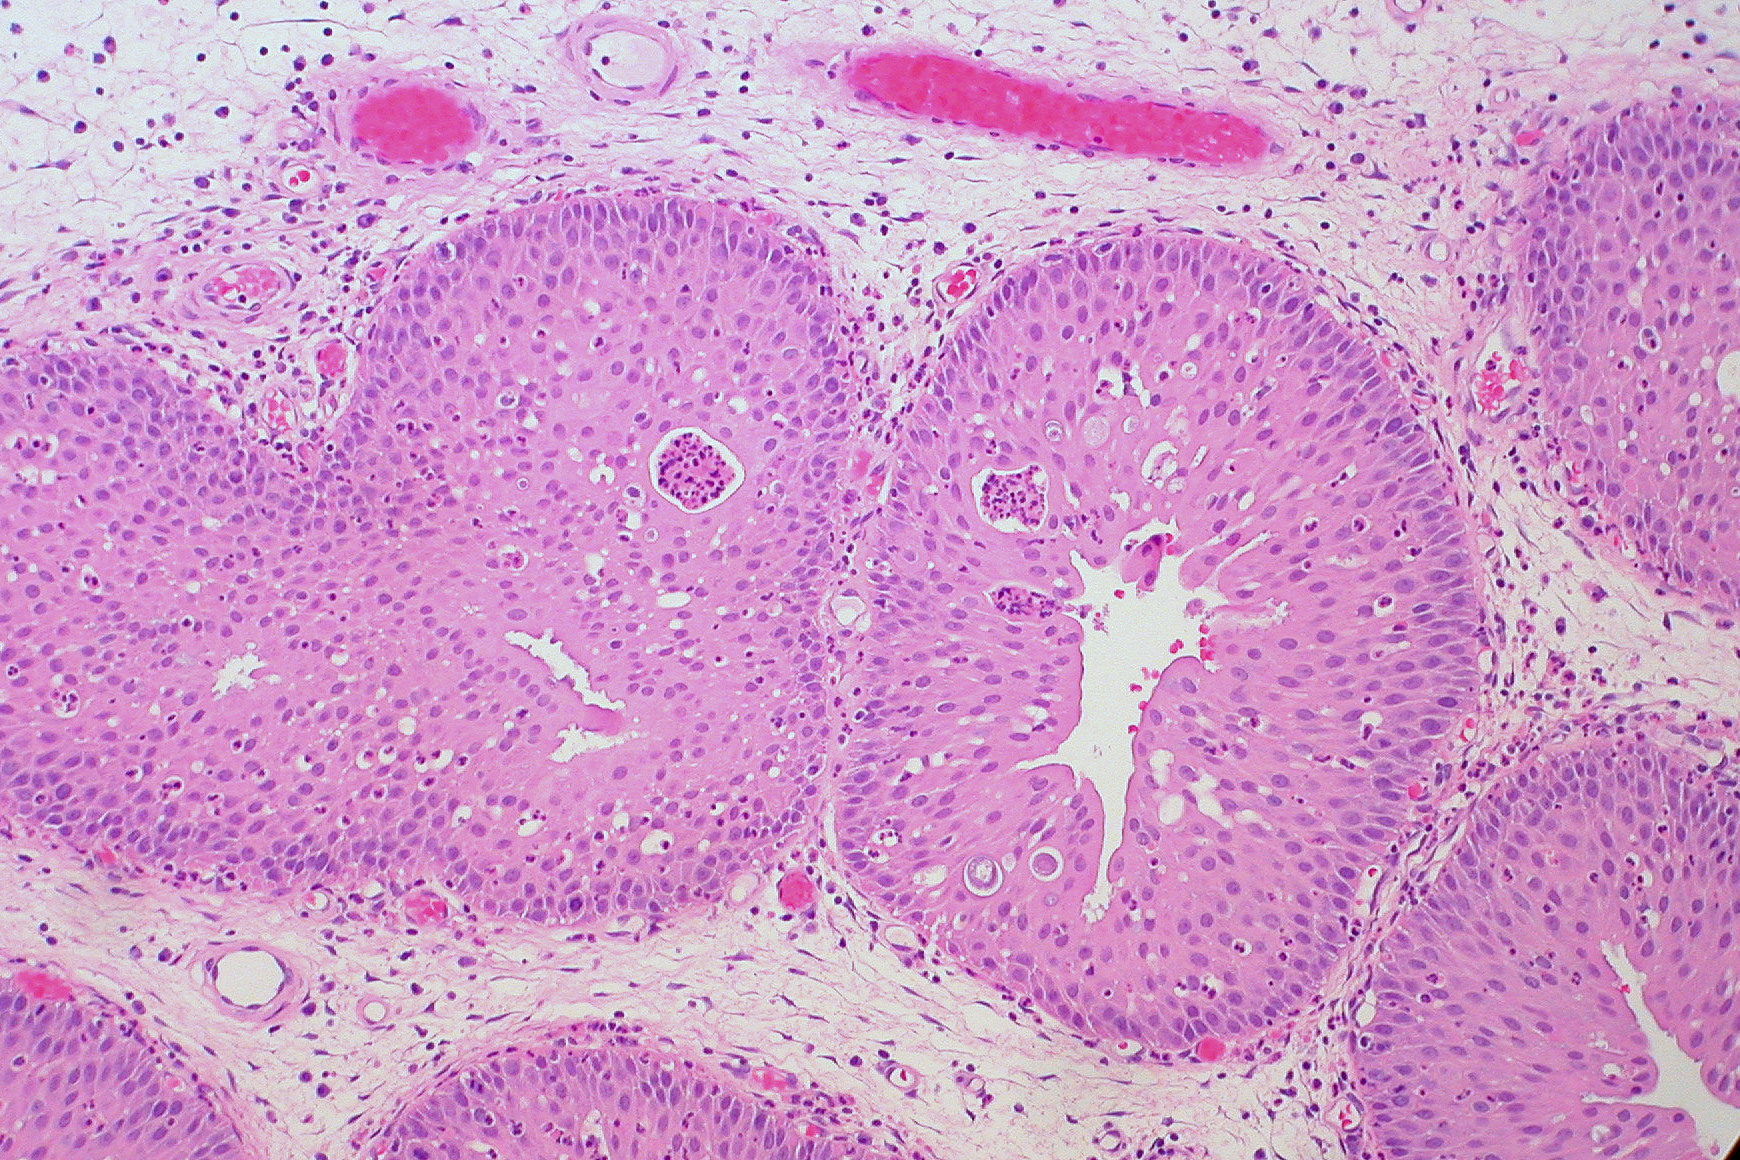 sinonasal papilloma cylindrical cell type)